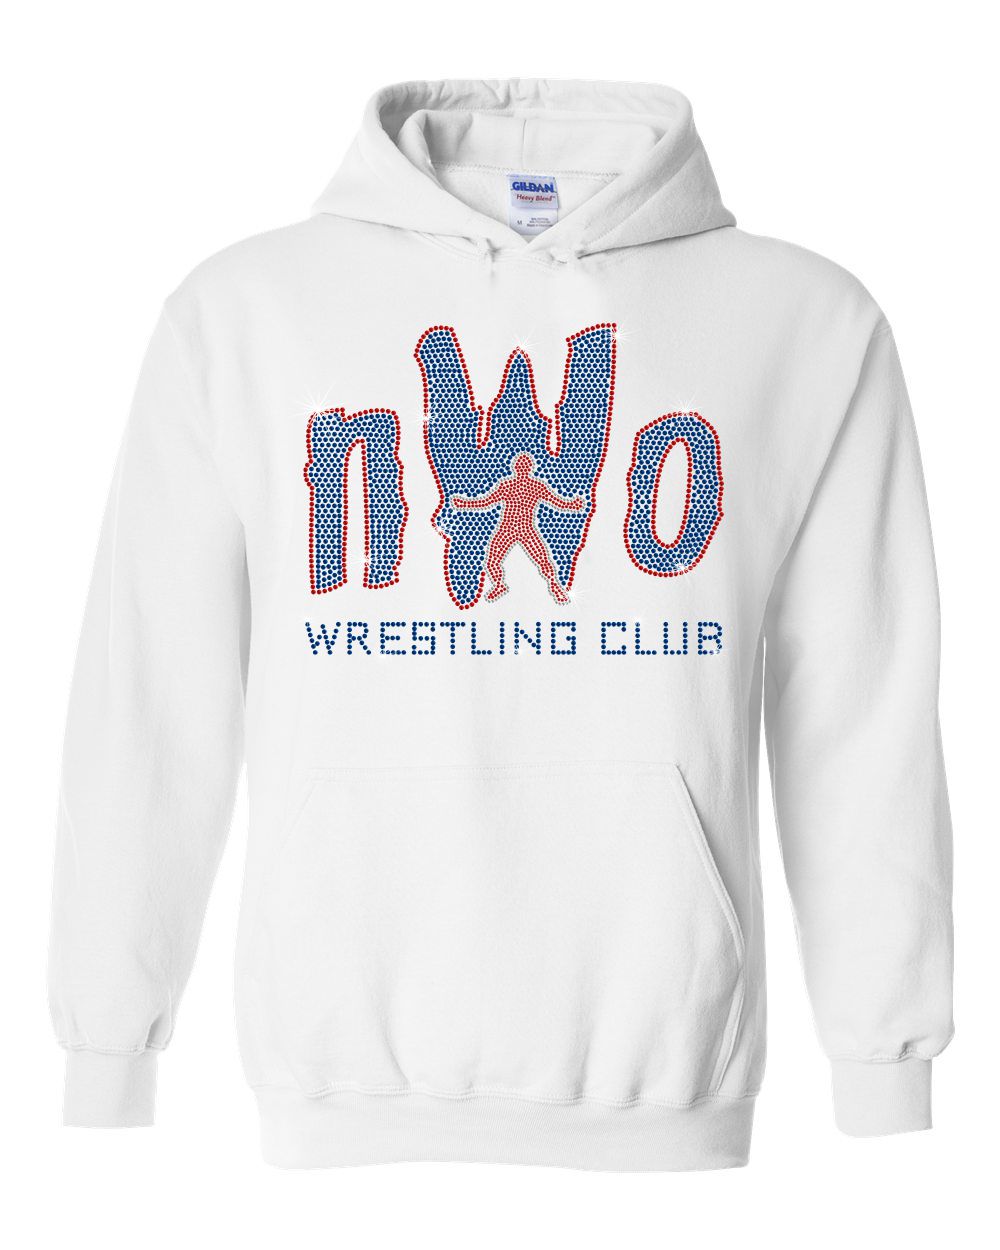 NWO White Unisex Hooded Sweatshirt With Royal Blue NWO Logo